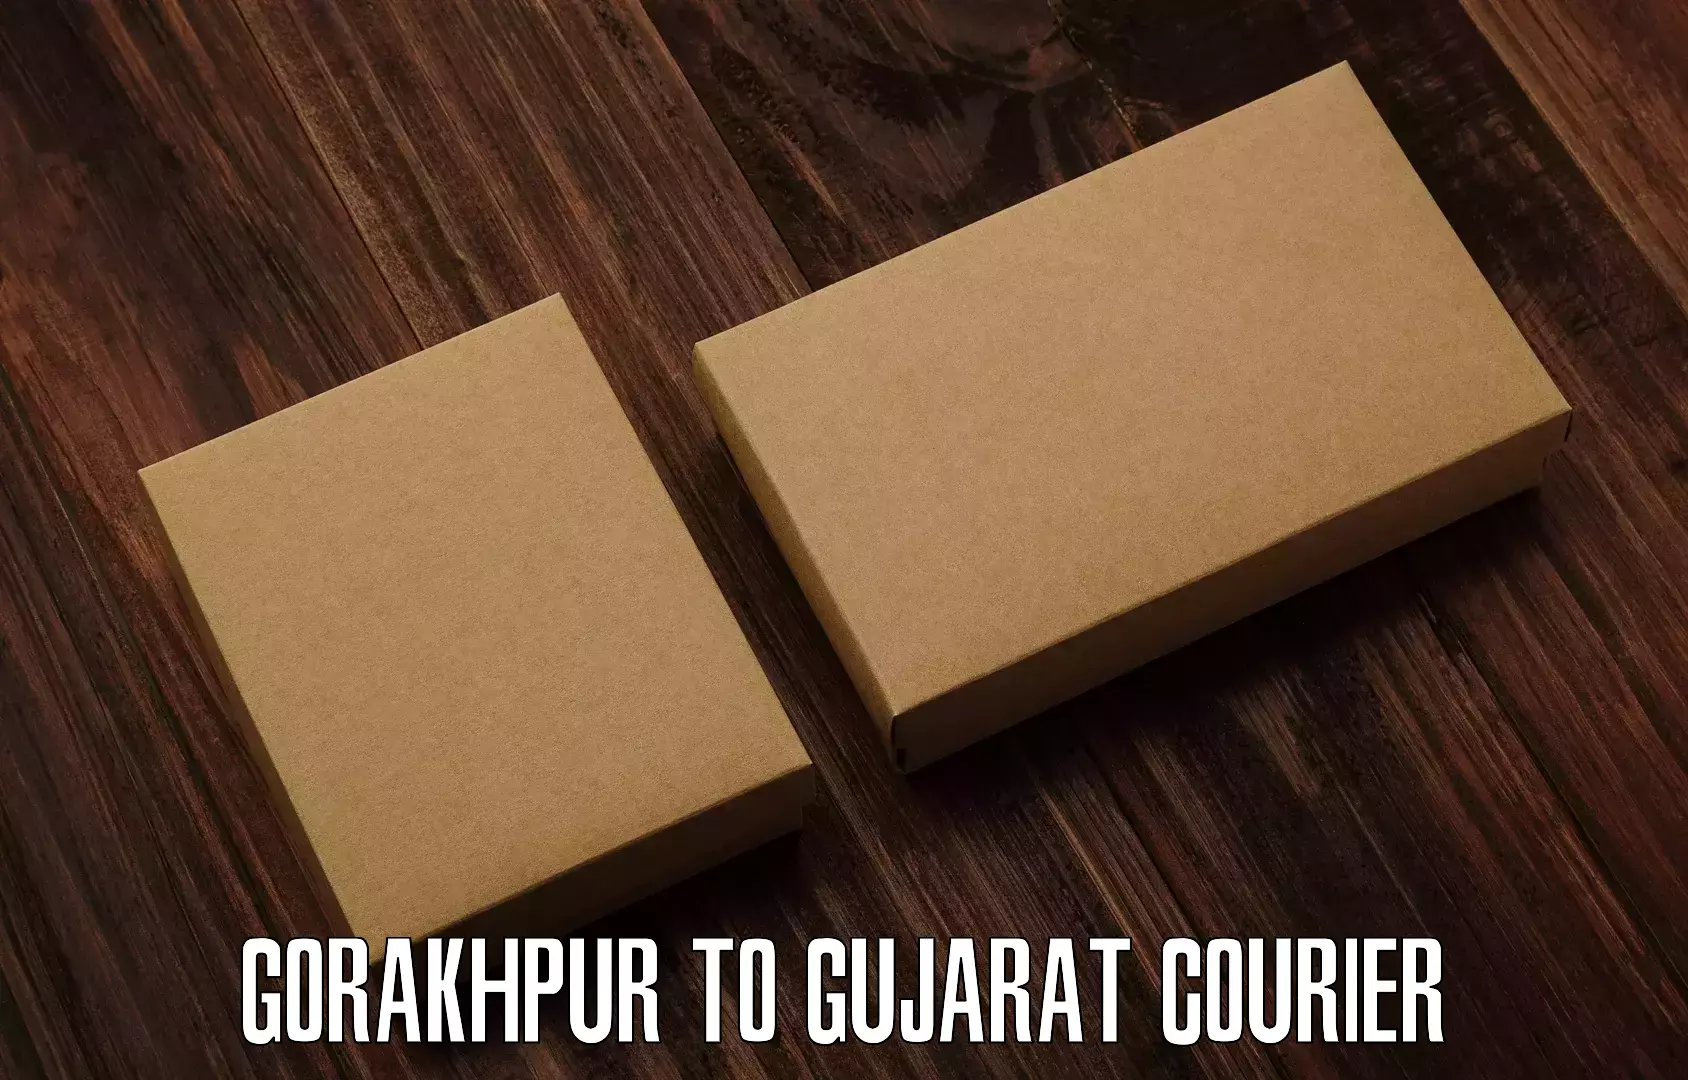 Affordable parcel service Gorakhpur to Mendarda